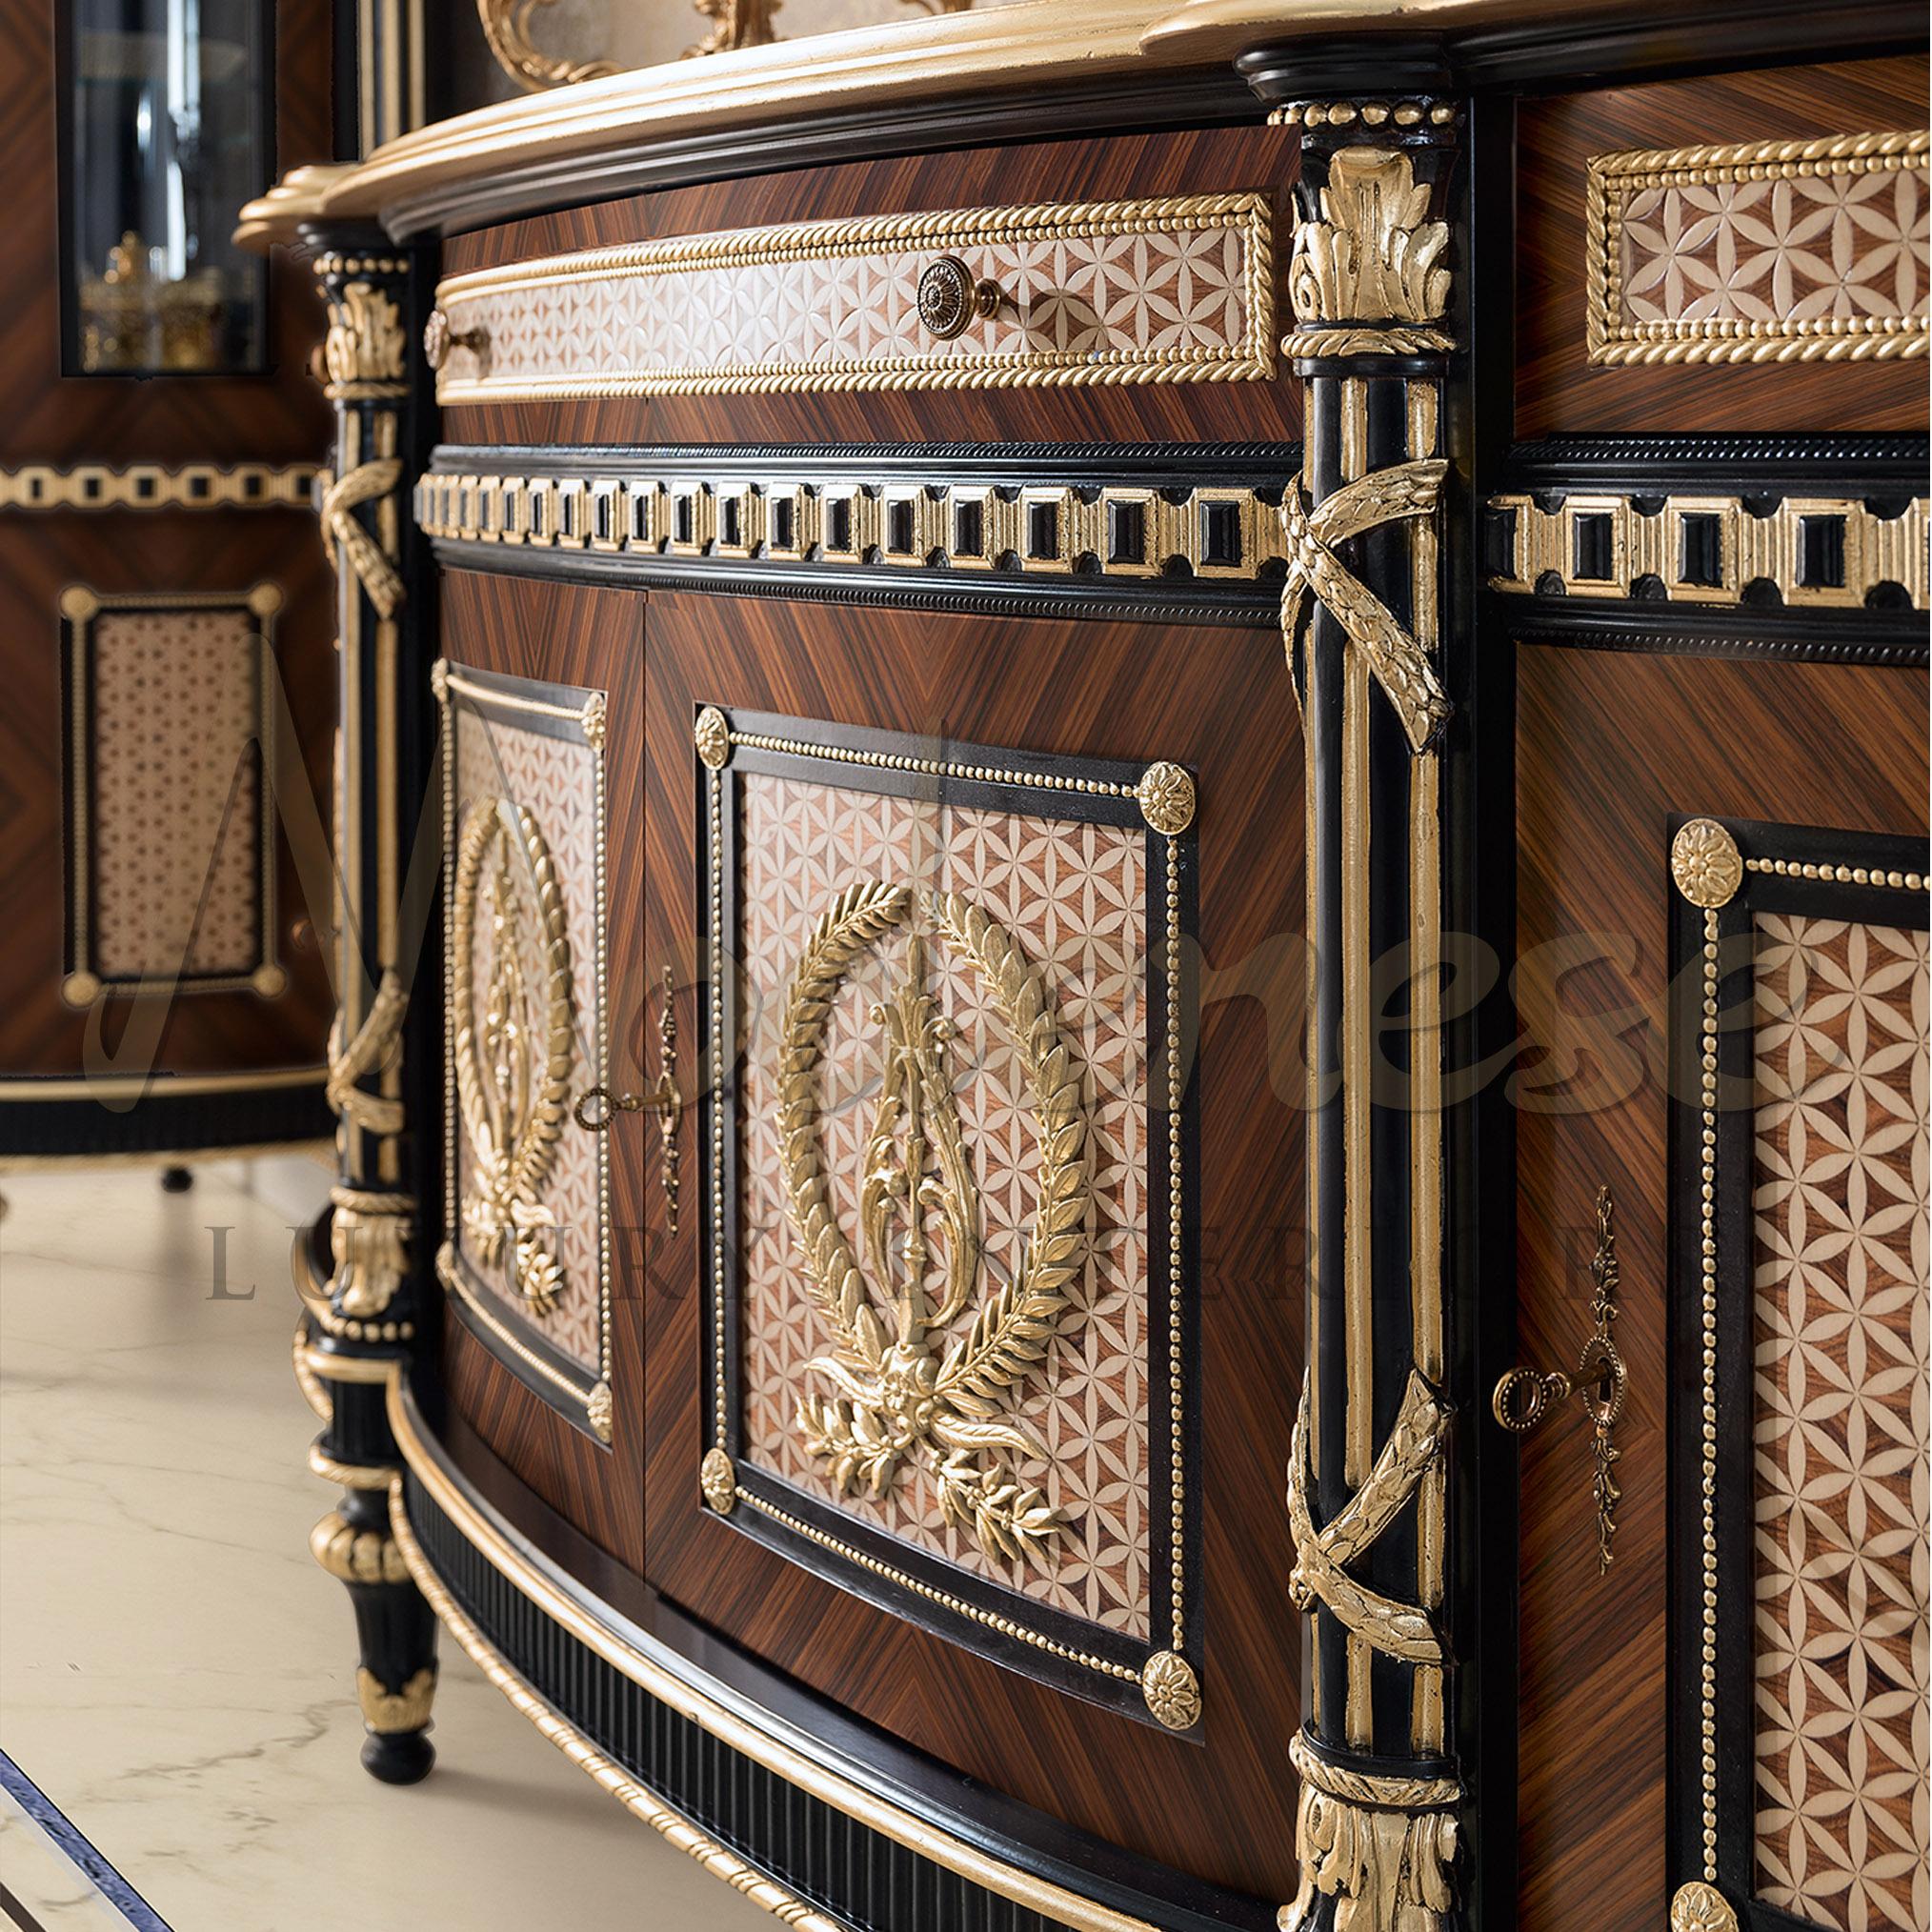 Unsere maßgefertigte Cradenza mit exquisiten Intarsienholzarbeiten. Dieses neu interpretierte klassische Stück repräsentiert im wahrsten Sinne des Wortes die Essenz von Modense Luxury Interiors. Jedes hölzerne Detail wurde sorgfältig entworfen und